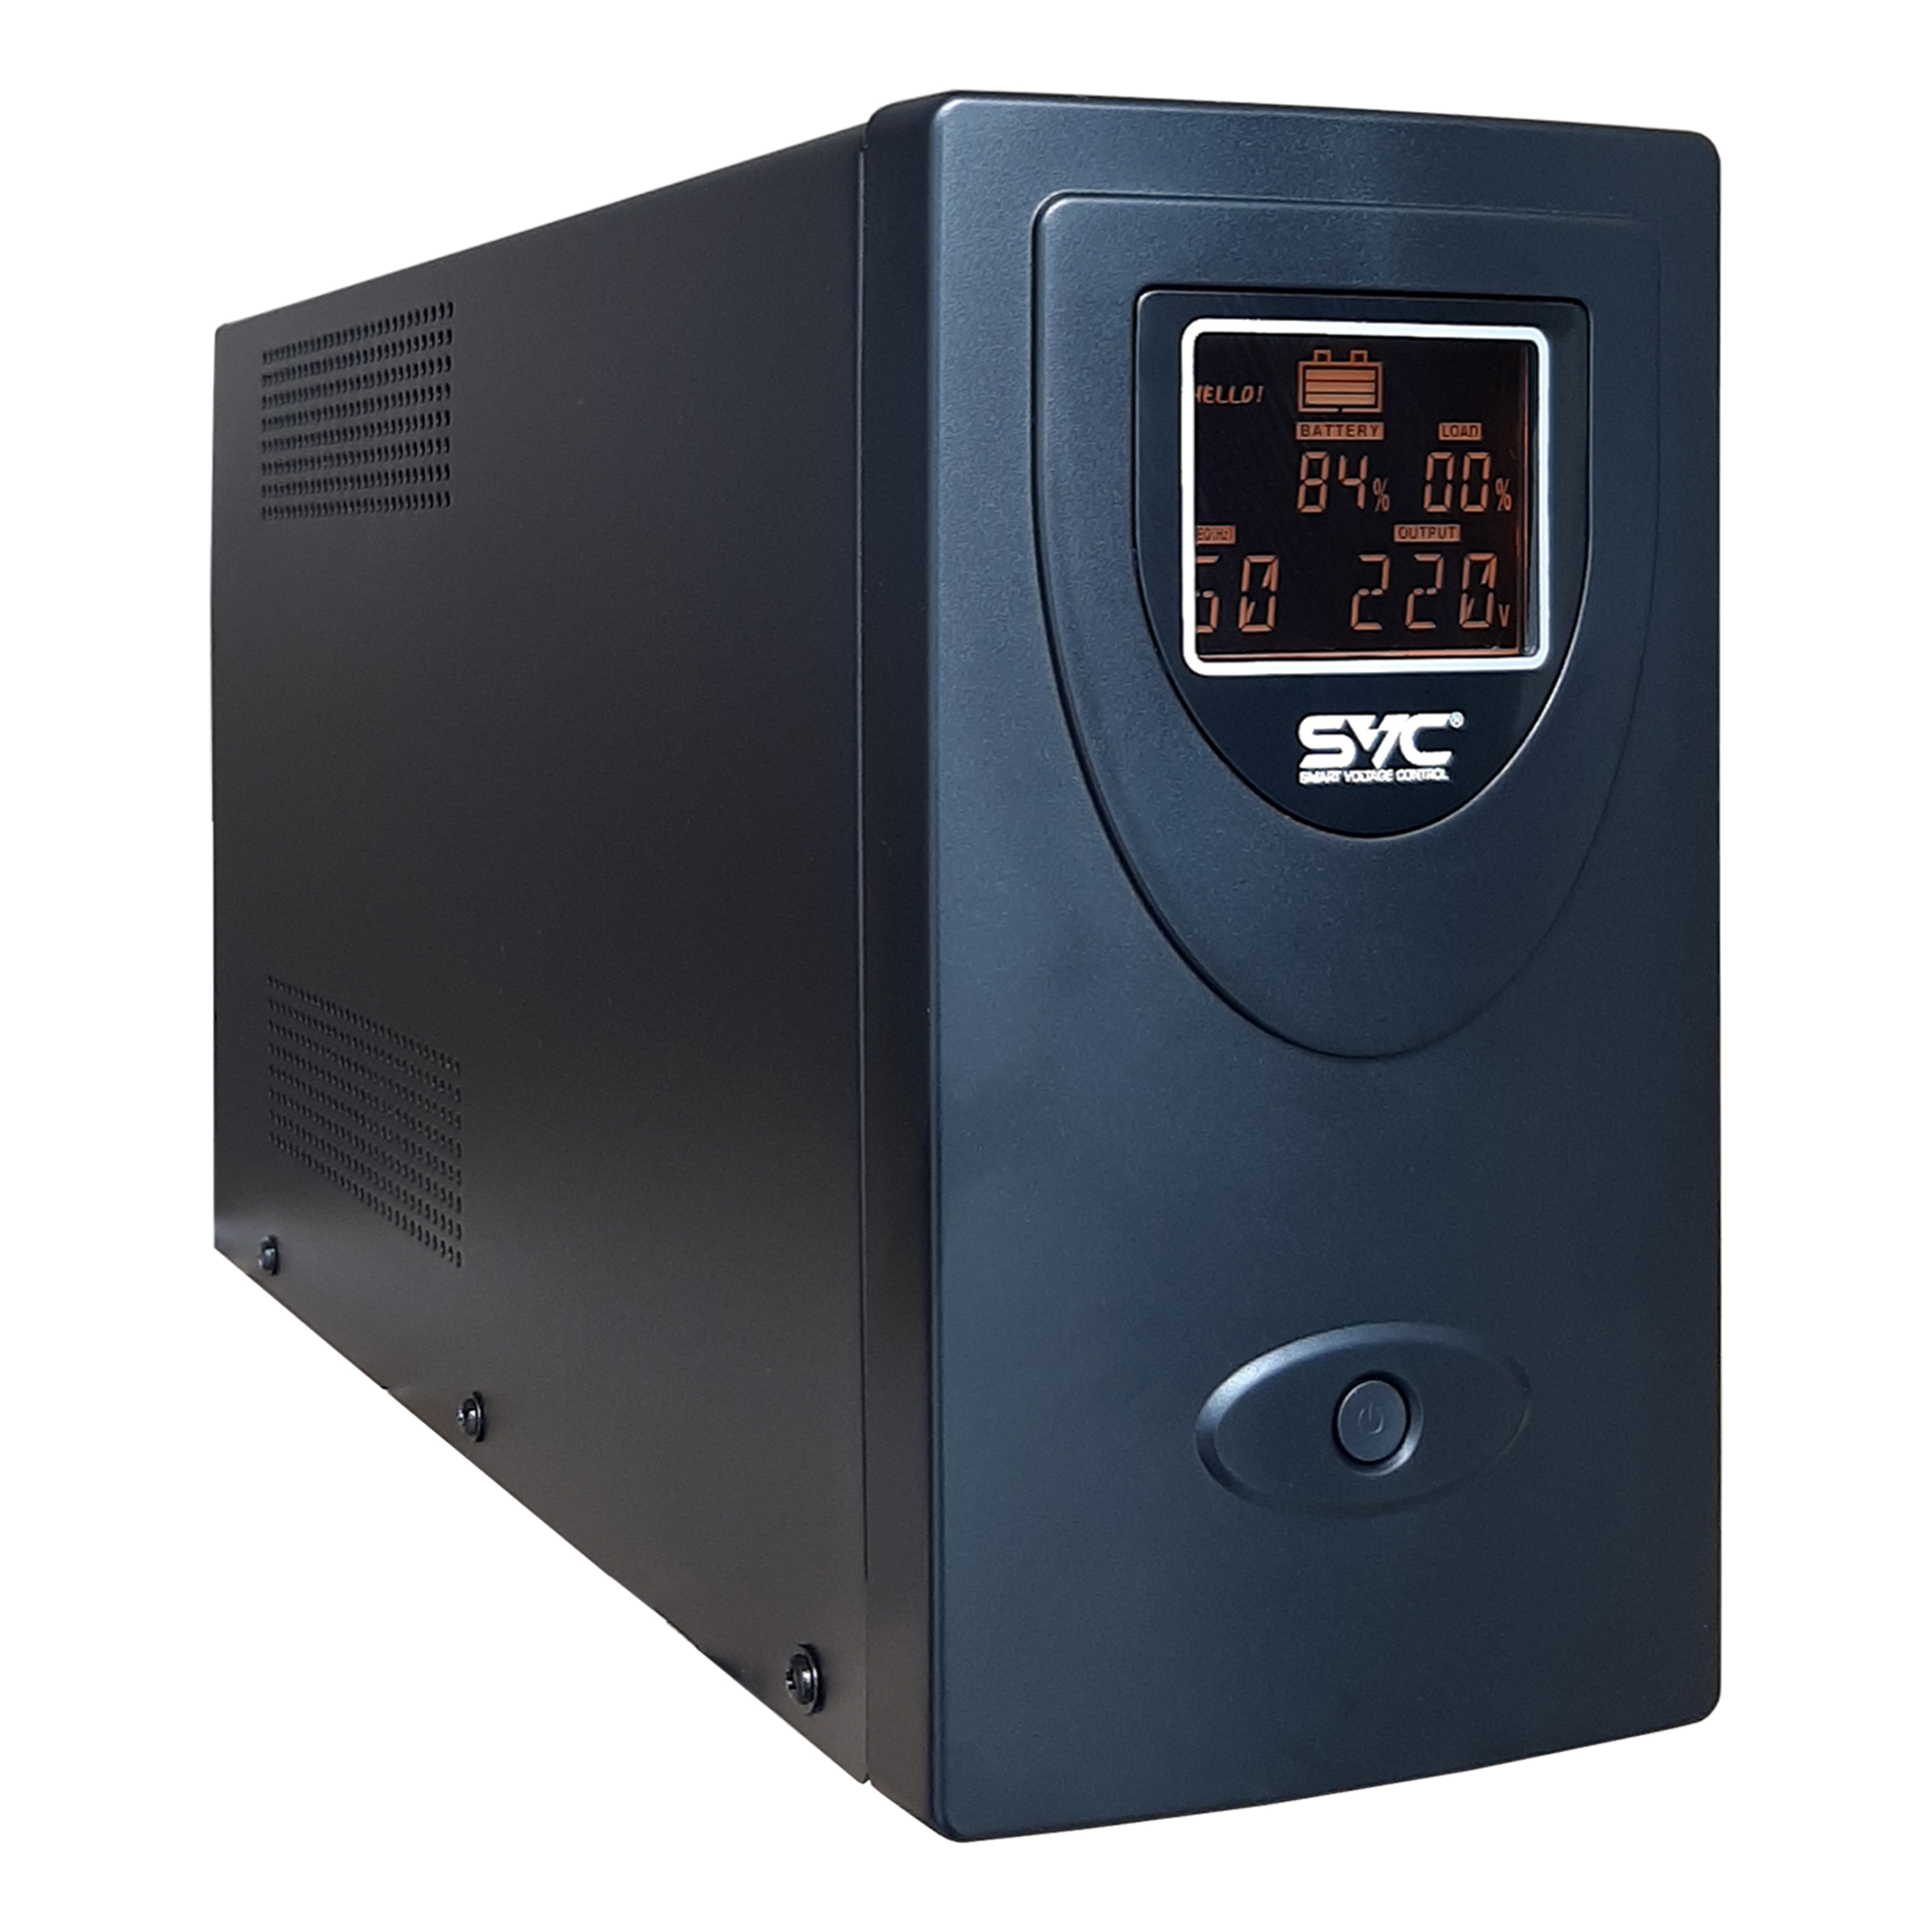 ИБП SVC V-2000-R-LCD, 2000VA, 1200W, EURO, розеток - 2, USB, черный (V-2000-R-LCD) - фото 1